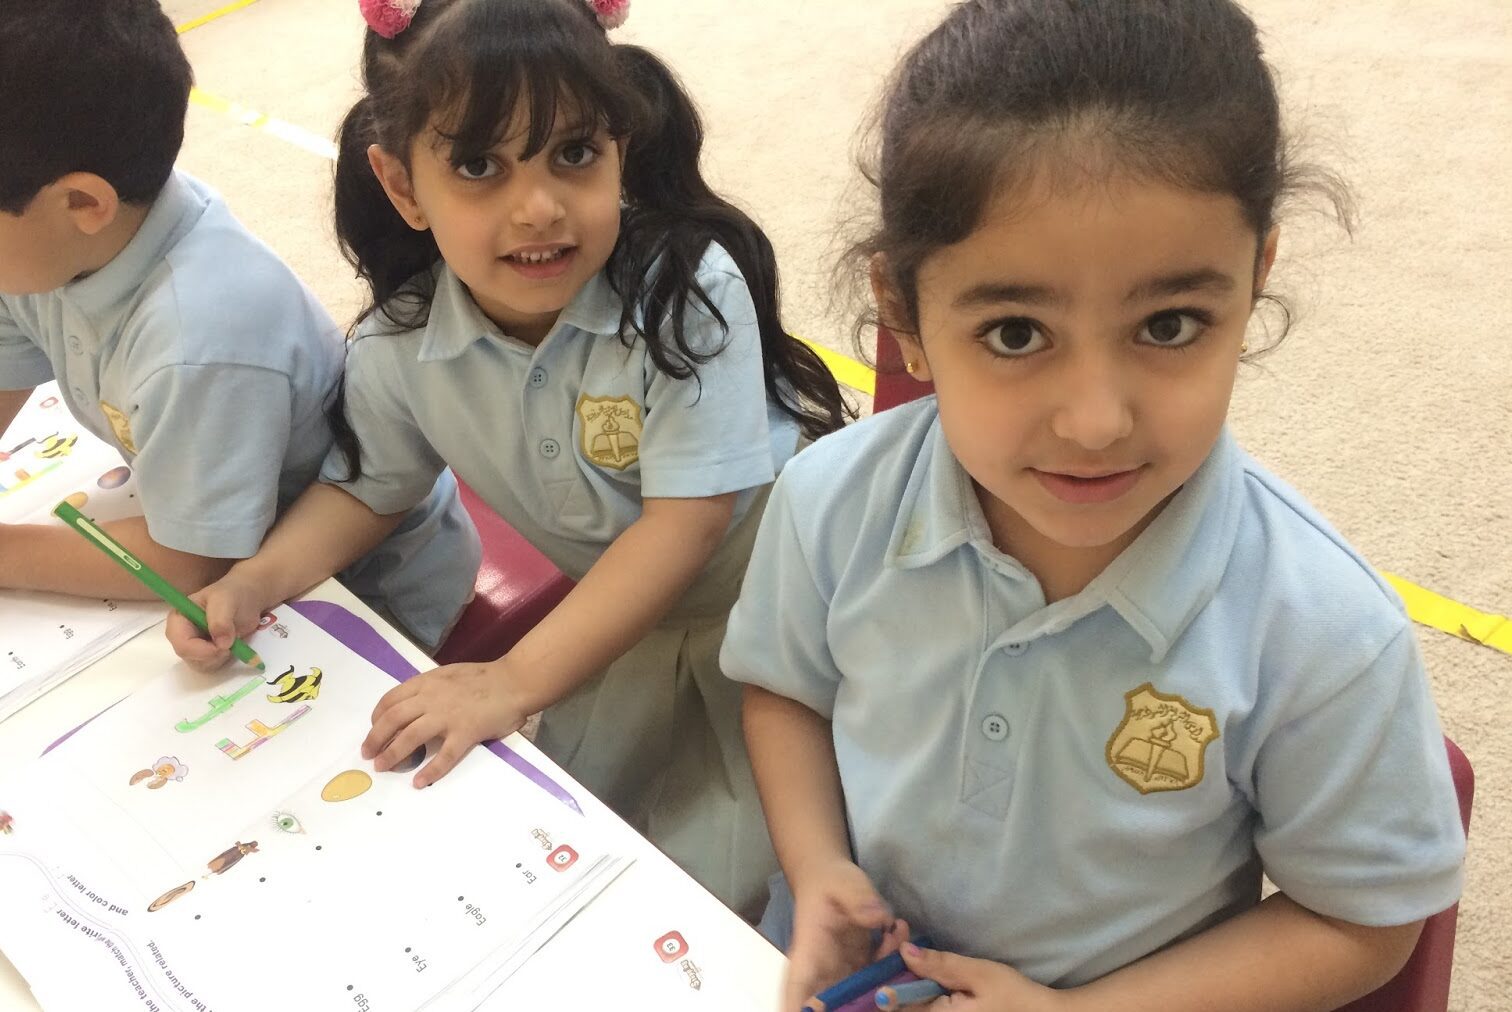 تنسيق رياض أطفال بالرقم القومي 2021 فى مختلف المحافظات e1625736055599 - مدونة التقنية العربية